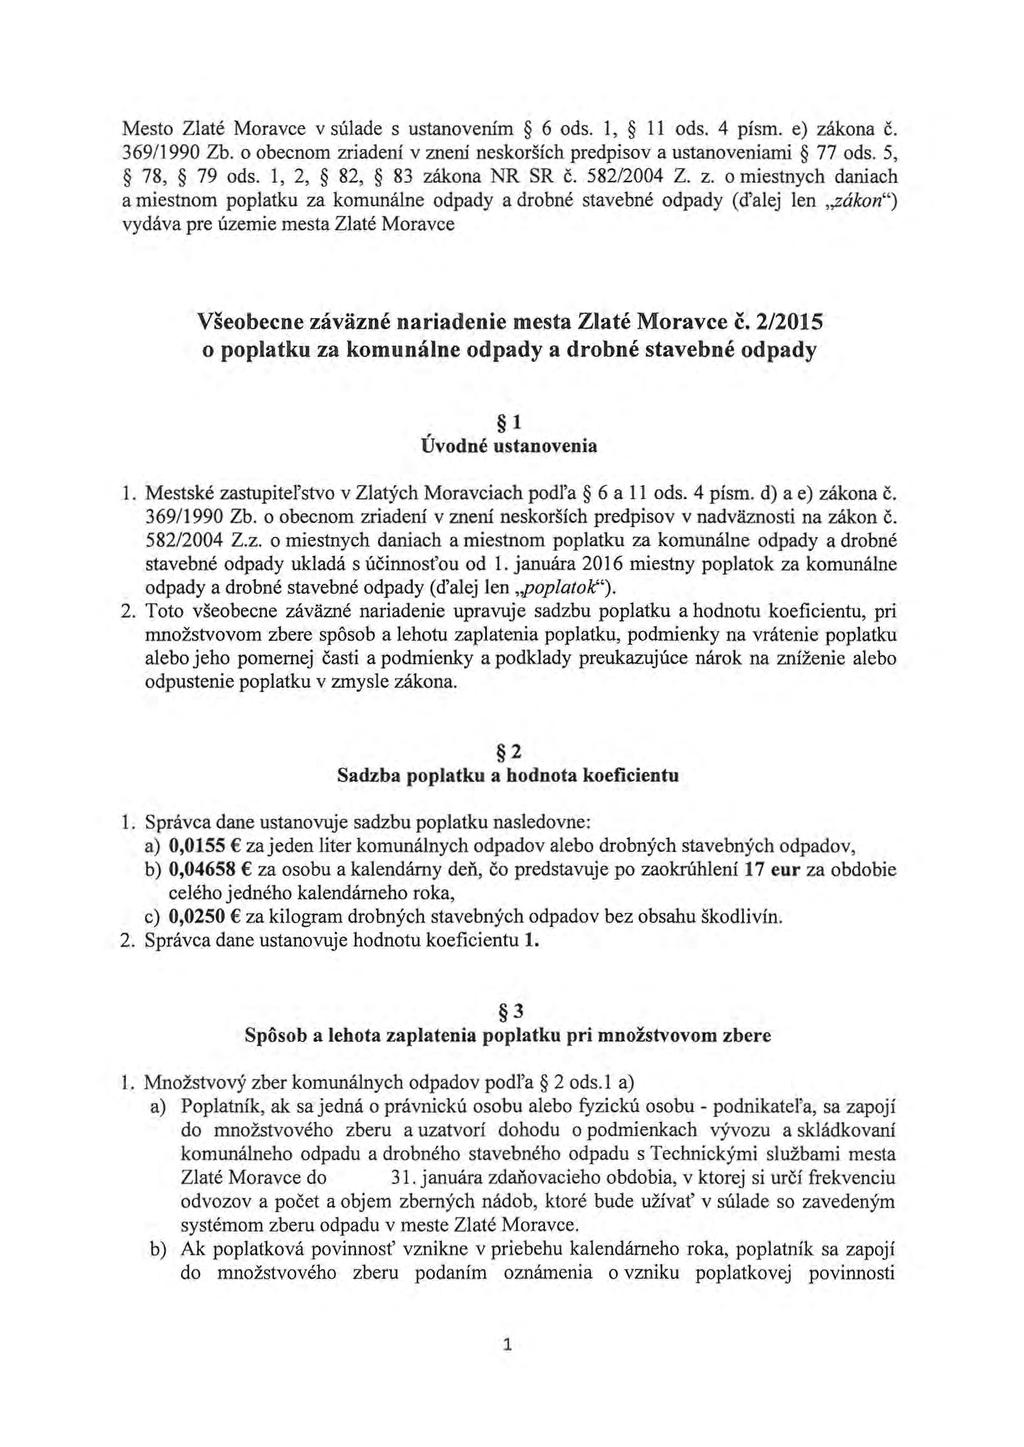 Mesto Zlaté Moravce v súlade s ustanovením 6 ods. 1, 11 ods. 4 písm. e) zákona č. 369/ 1990 Zb. o obecnom zriadení v znení neskorších predpisov a ustanoveniami 77 ods. 5, 78, 79 ods.